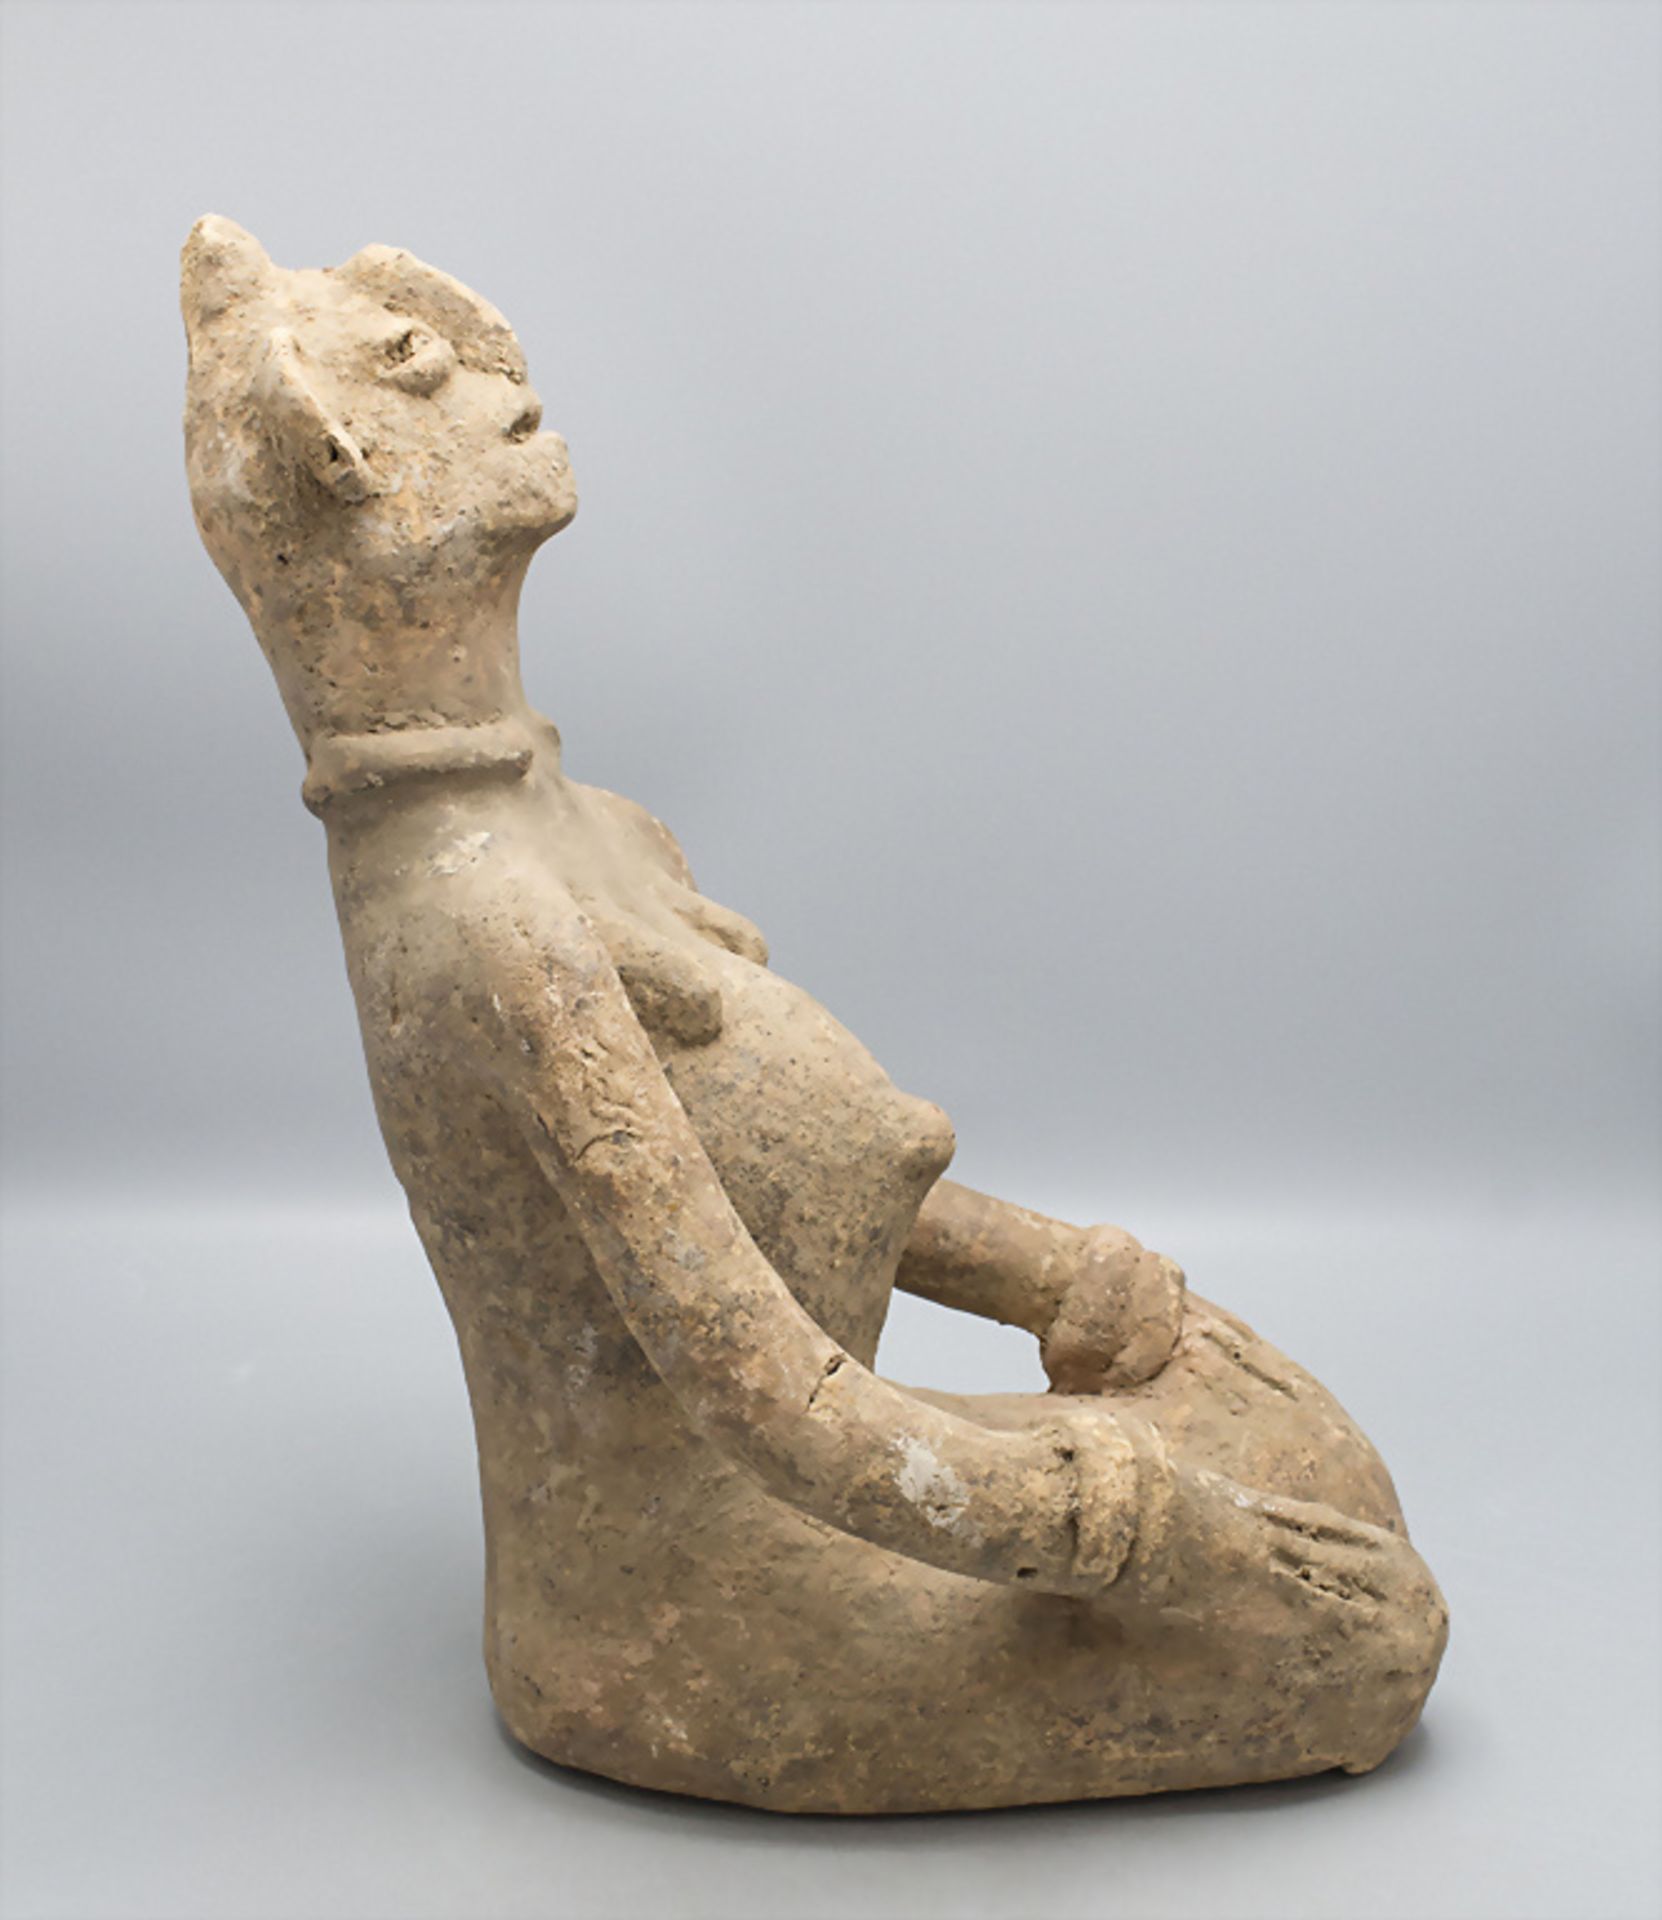 Knieende Terracotta Skulptur vom Stamm der Bankoni, Mali, wohl 19. Jh. - Image 2 of 5